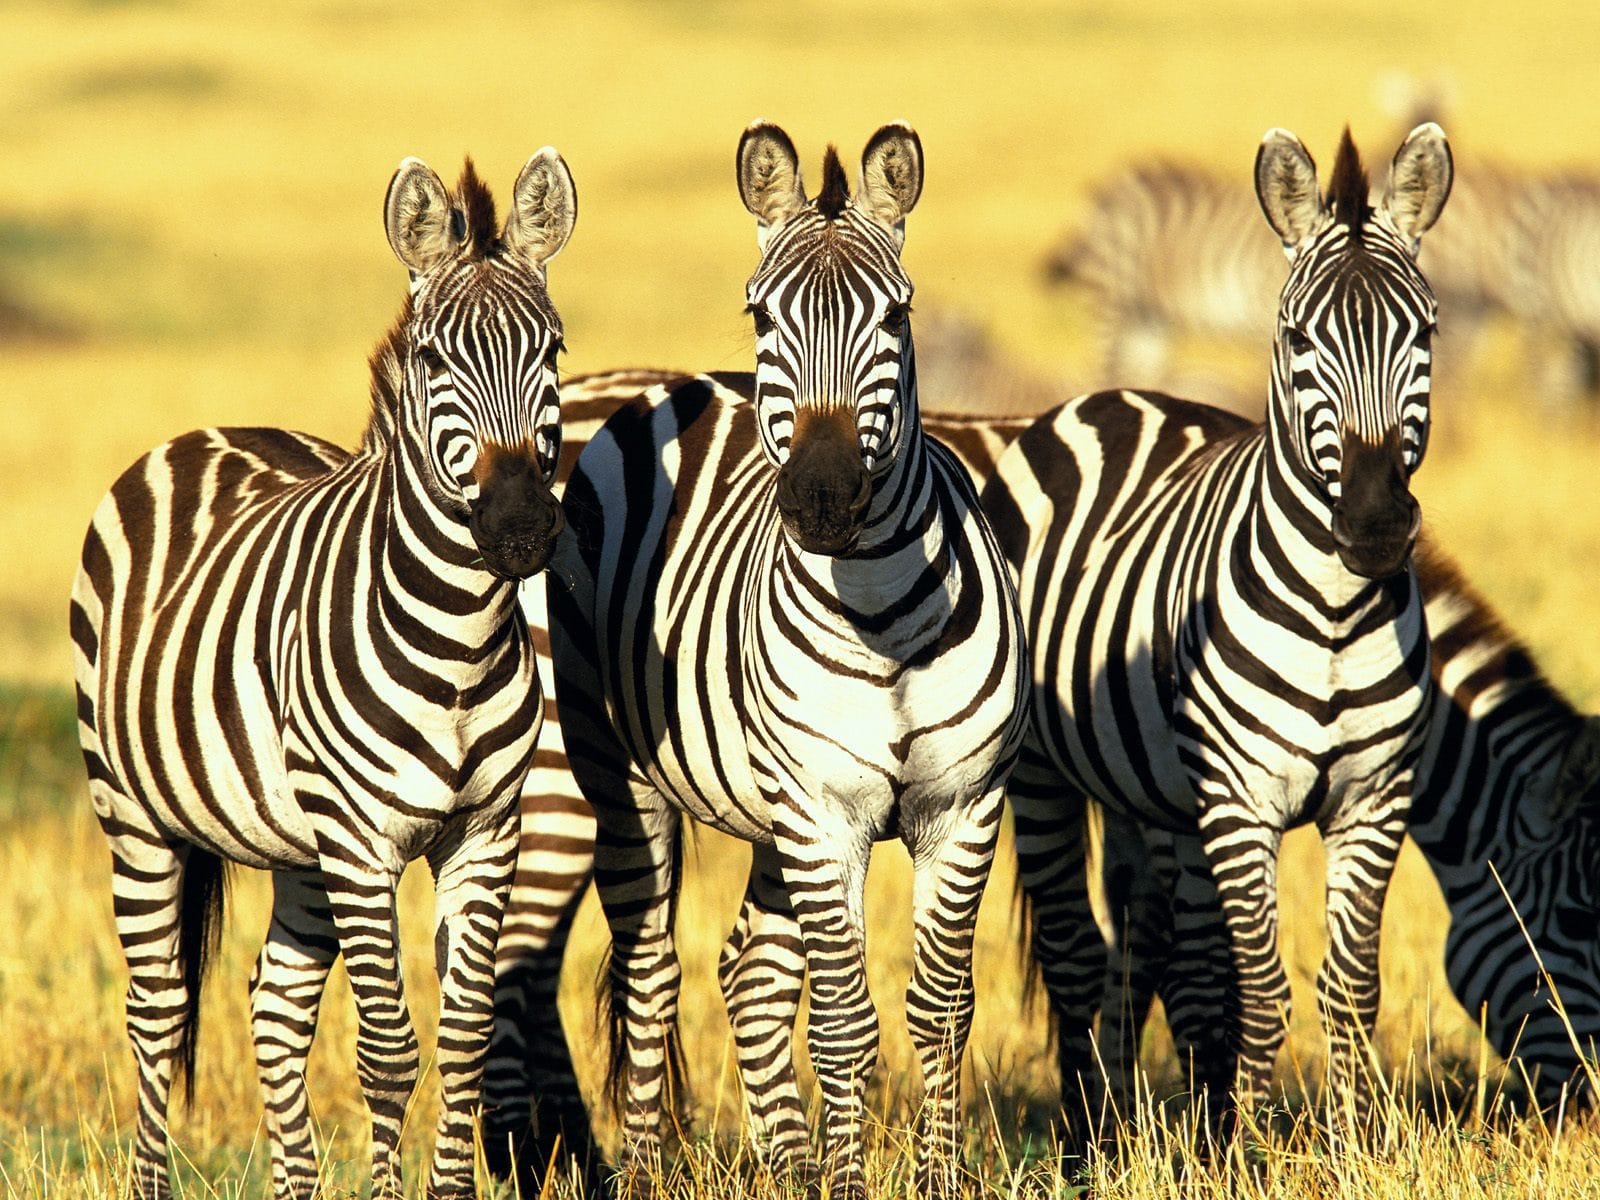 Os presentes da zebra incluem ver sem filtros, a clareza, o equilíbrio, a agilidade, a unicidade, poder, certeza do caminho a seguir, manutenção da individualidade dentro do grupo.